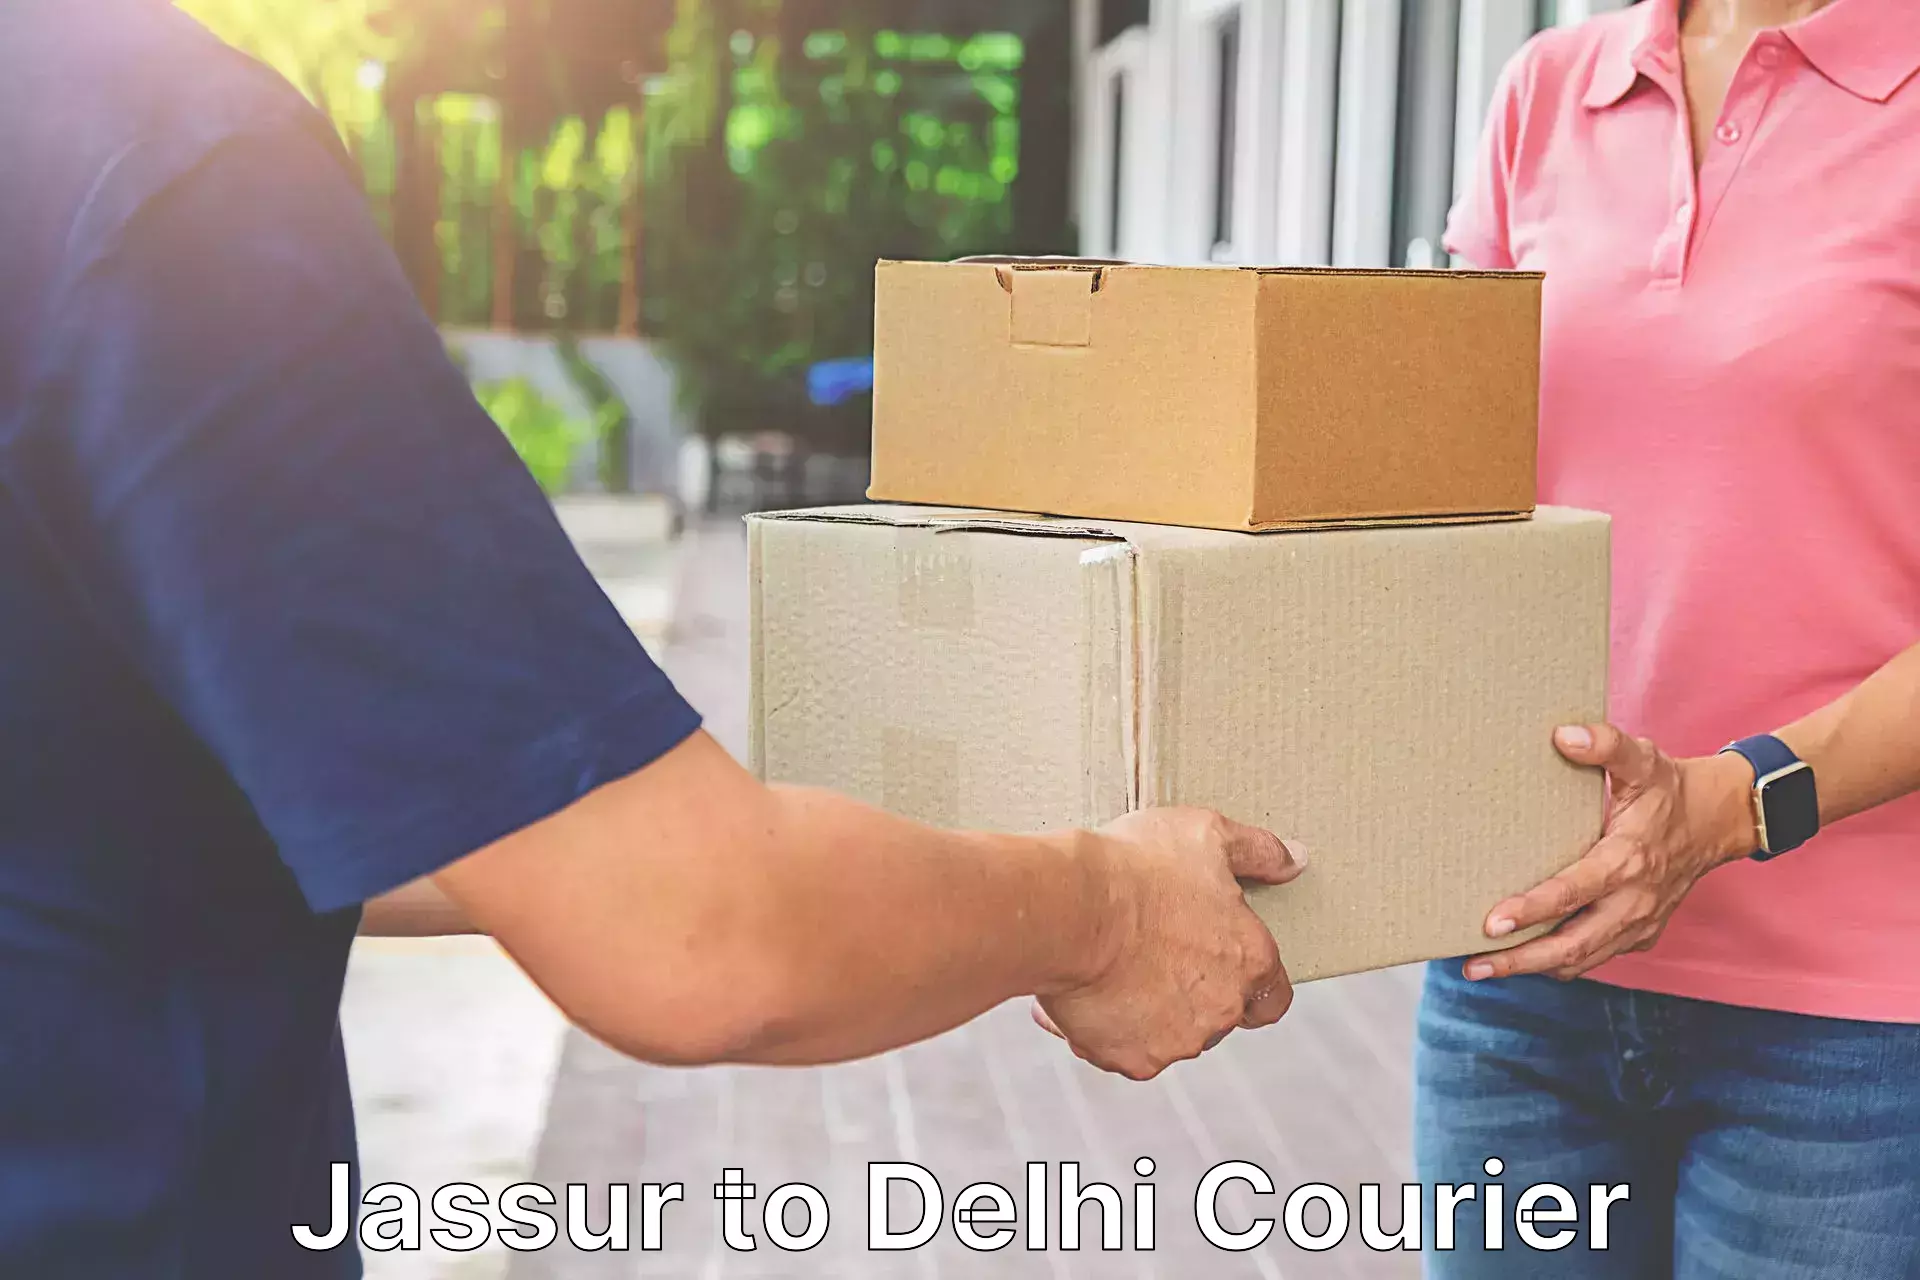 24-hour courier service Jassur to Delhi